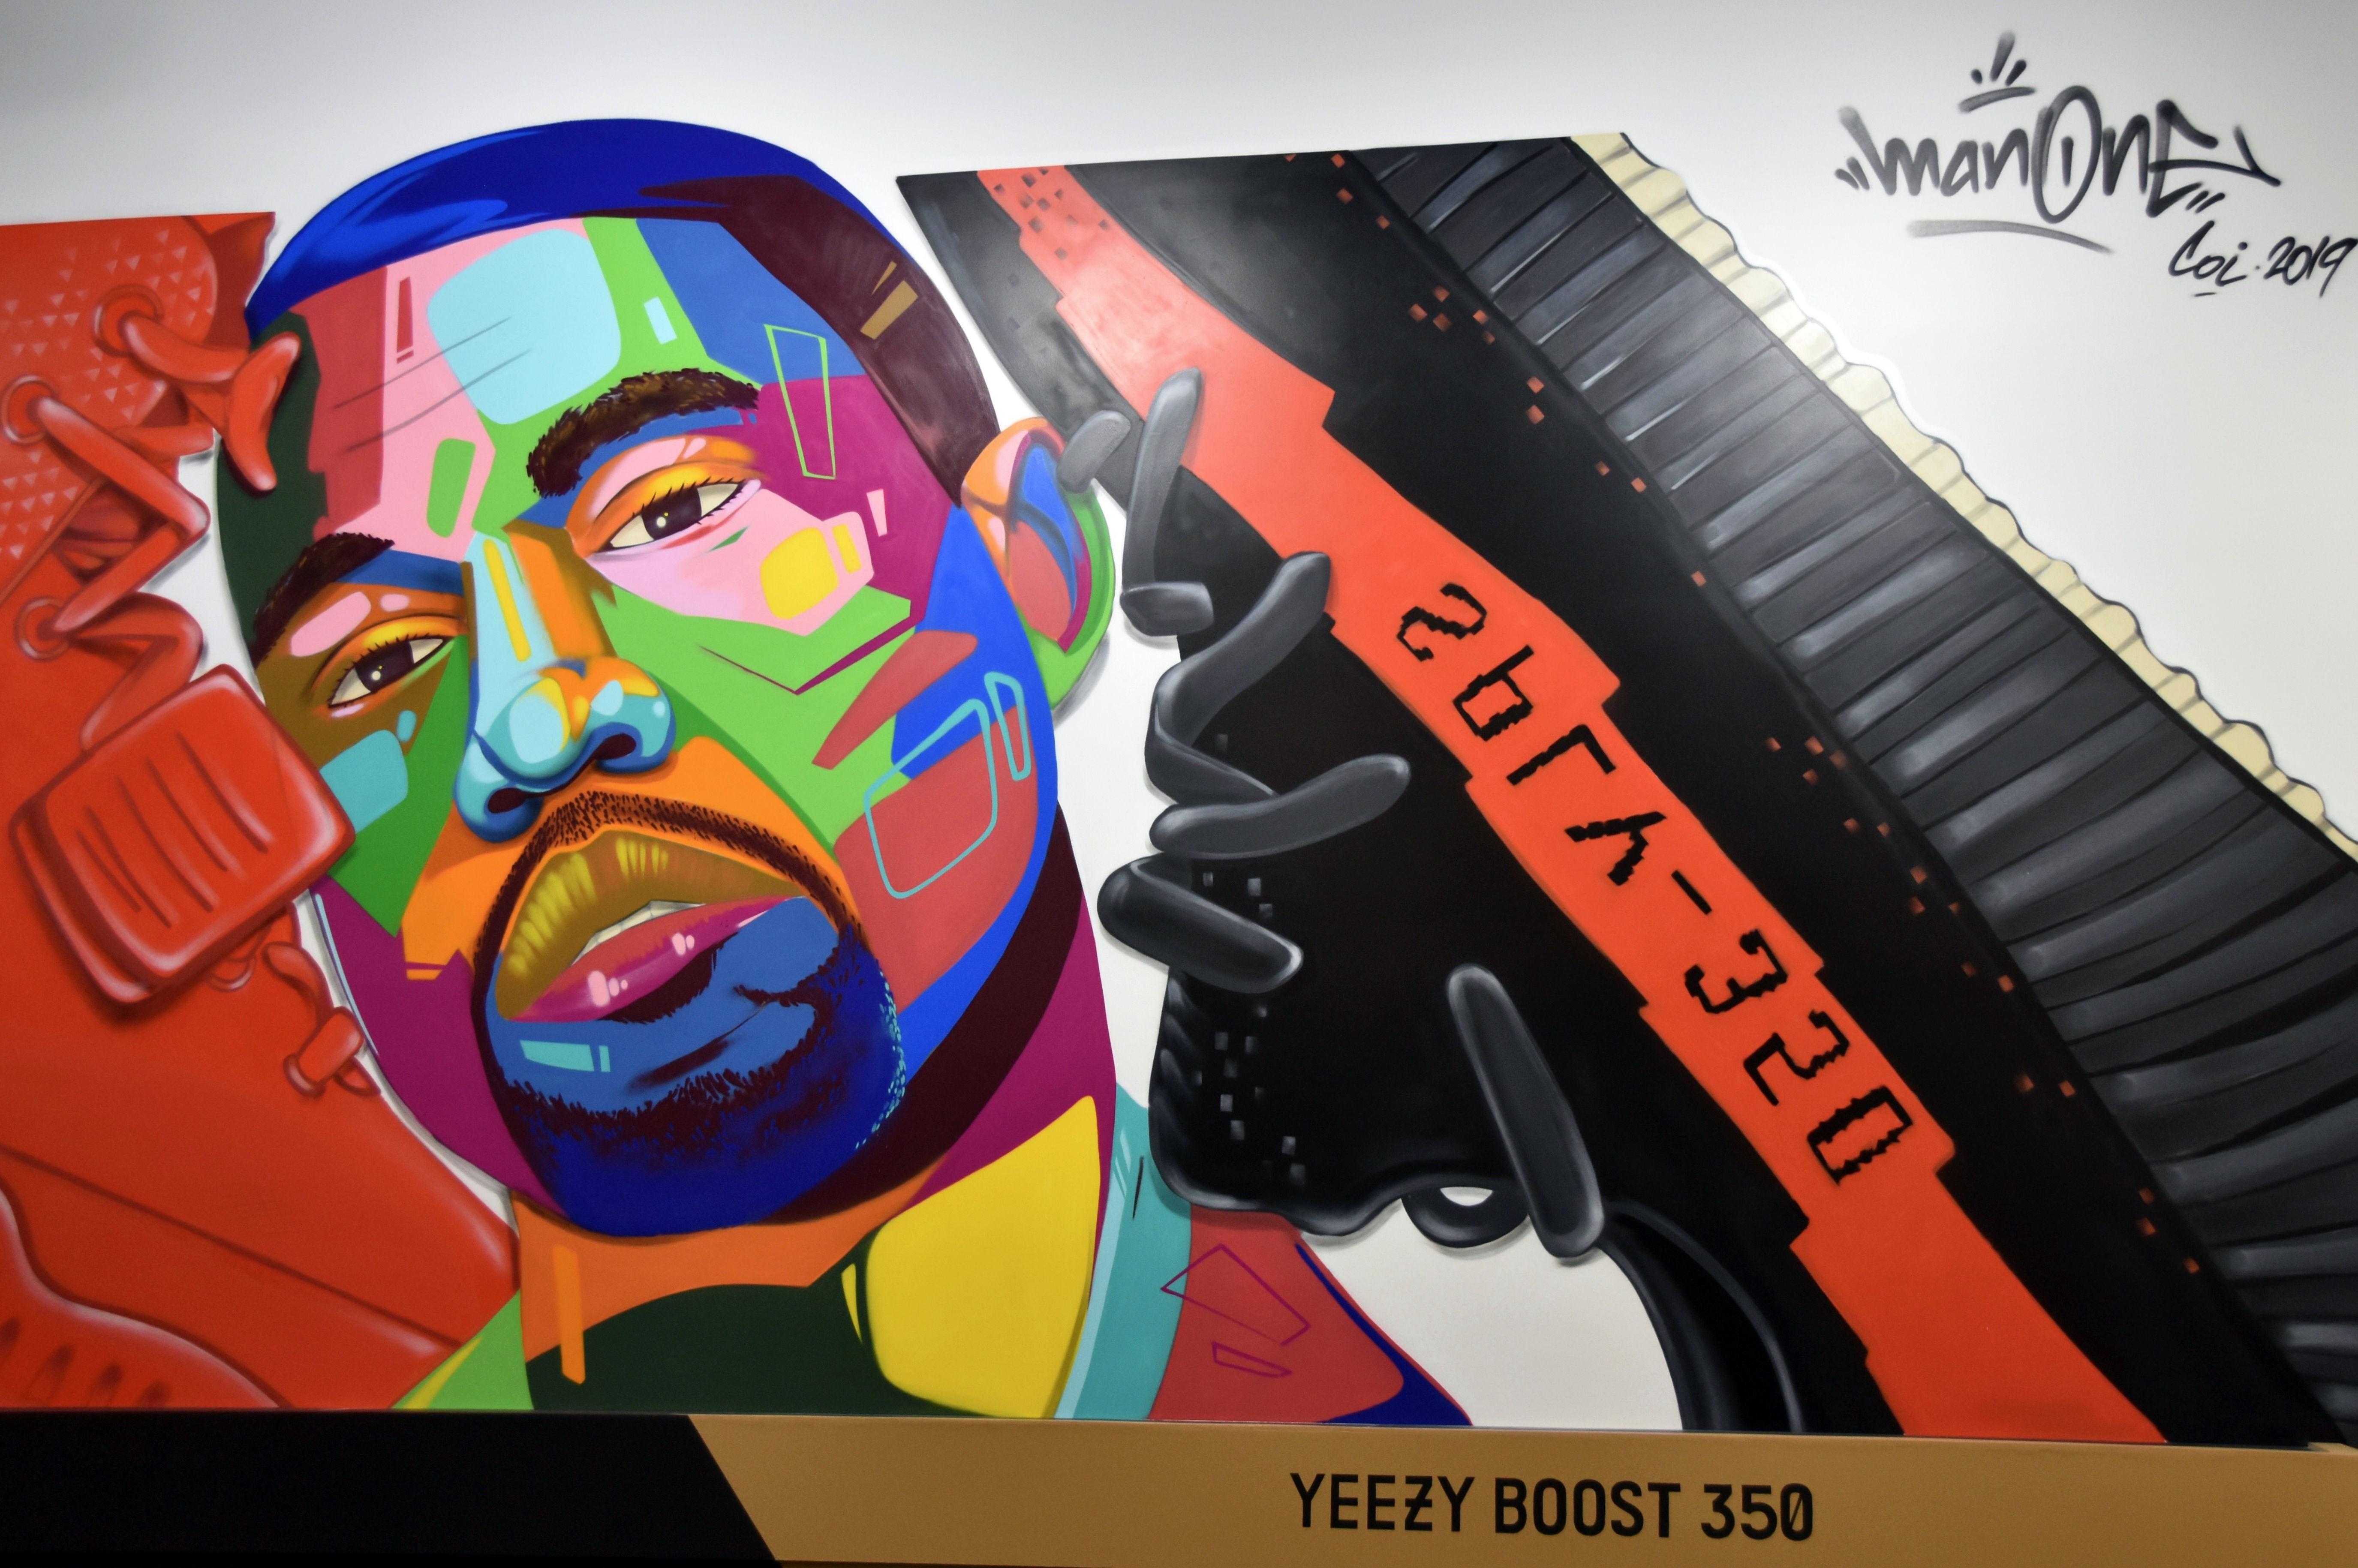 El muralista "Man One" retrató al cantautor estadounidense Kanye West junto a una zapatilla.